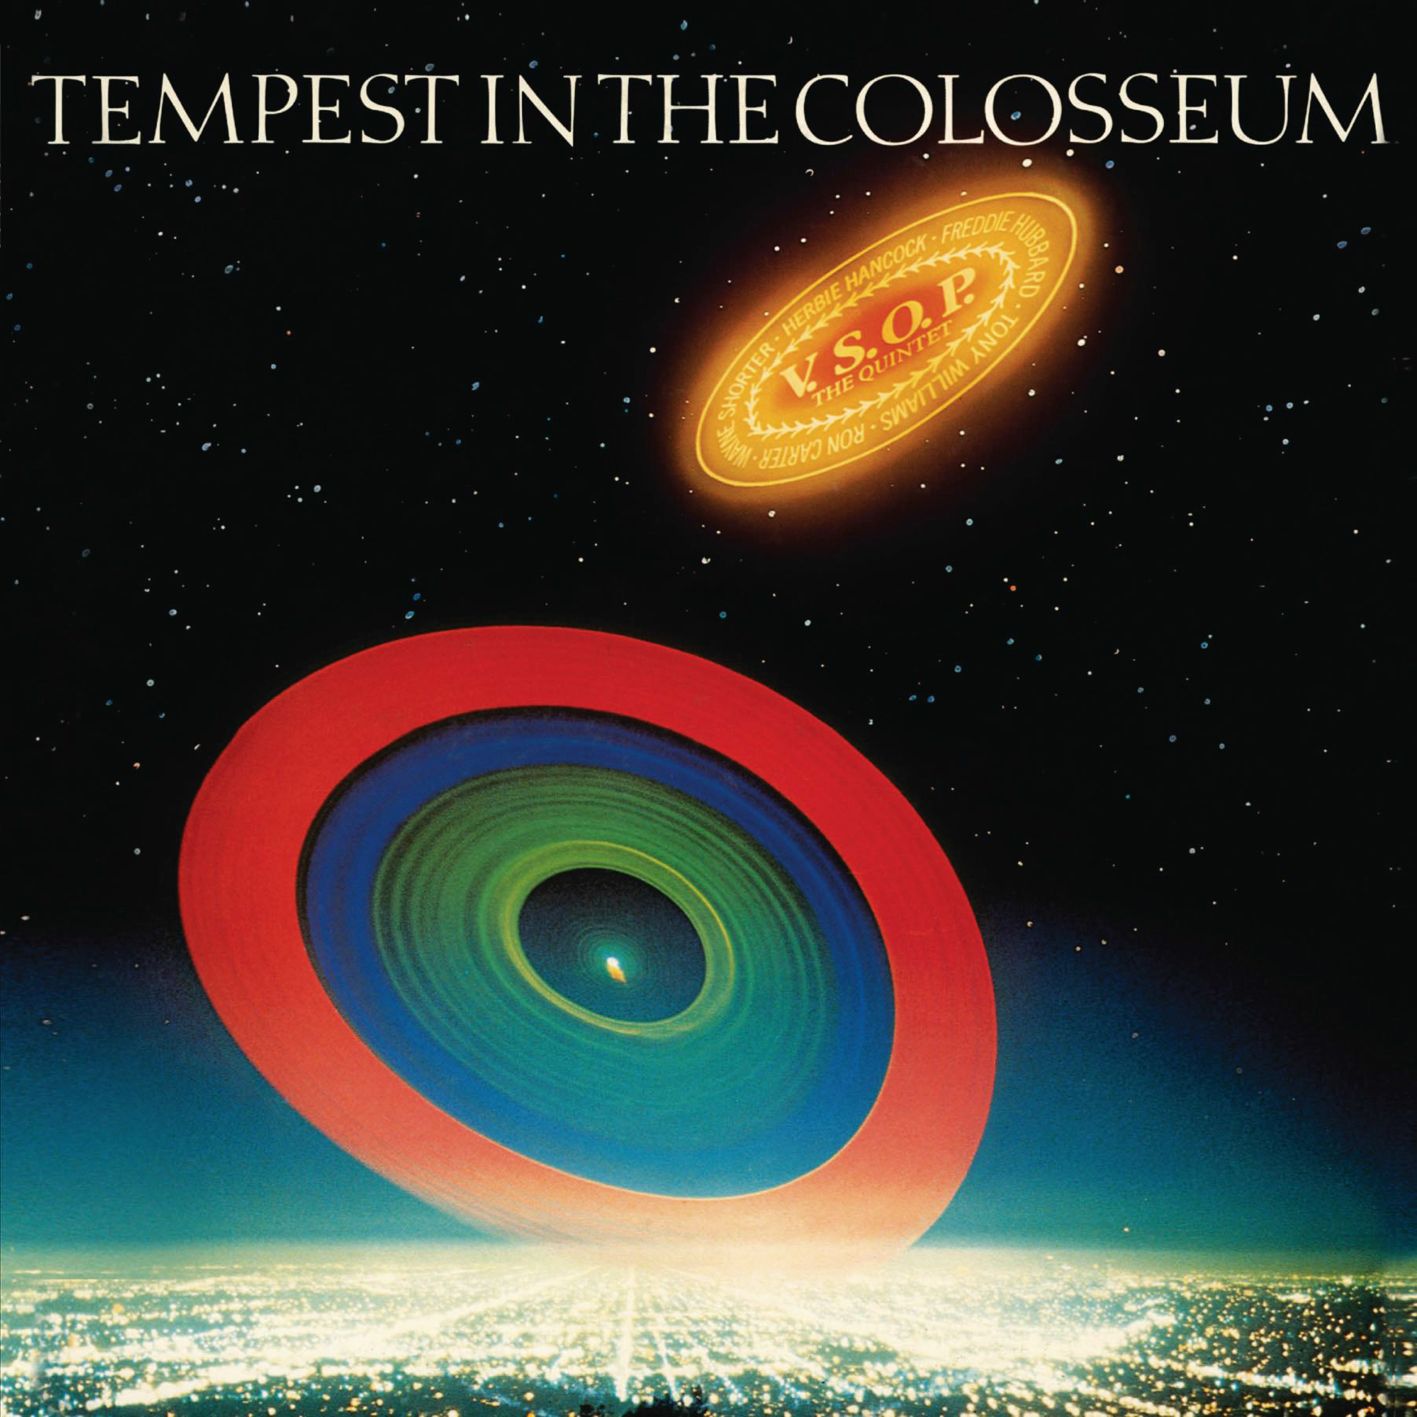 V.S.O.P. The Quintet – Tempest In The Colosseum (1977) [Japanese SACD Reissue 2007] SACD ISO + FLAC 24bit/96kHz